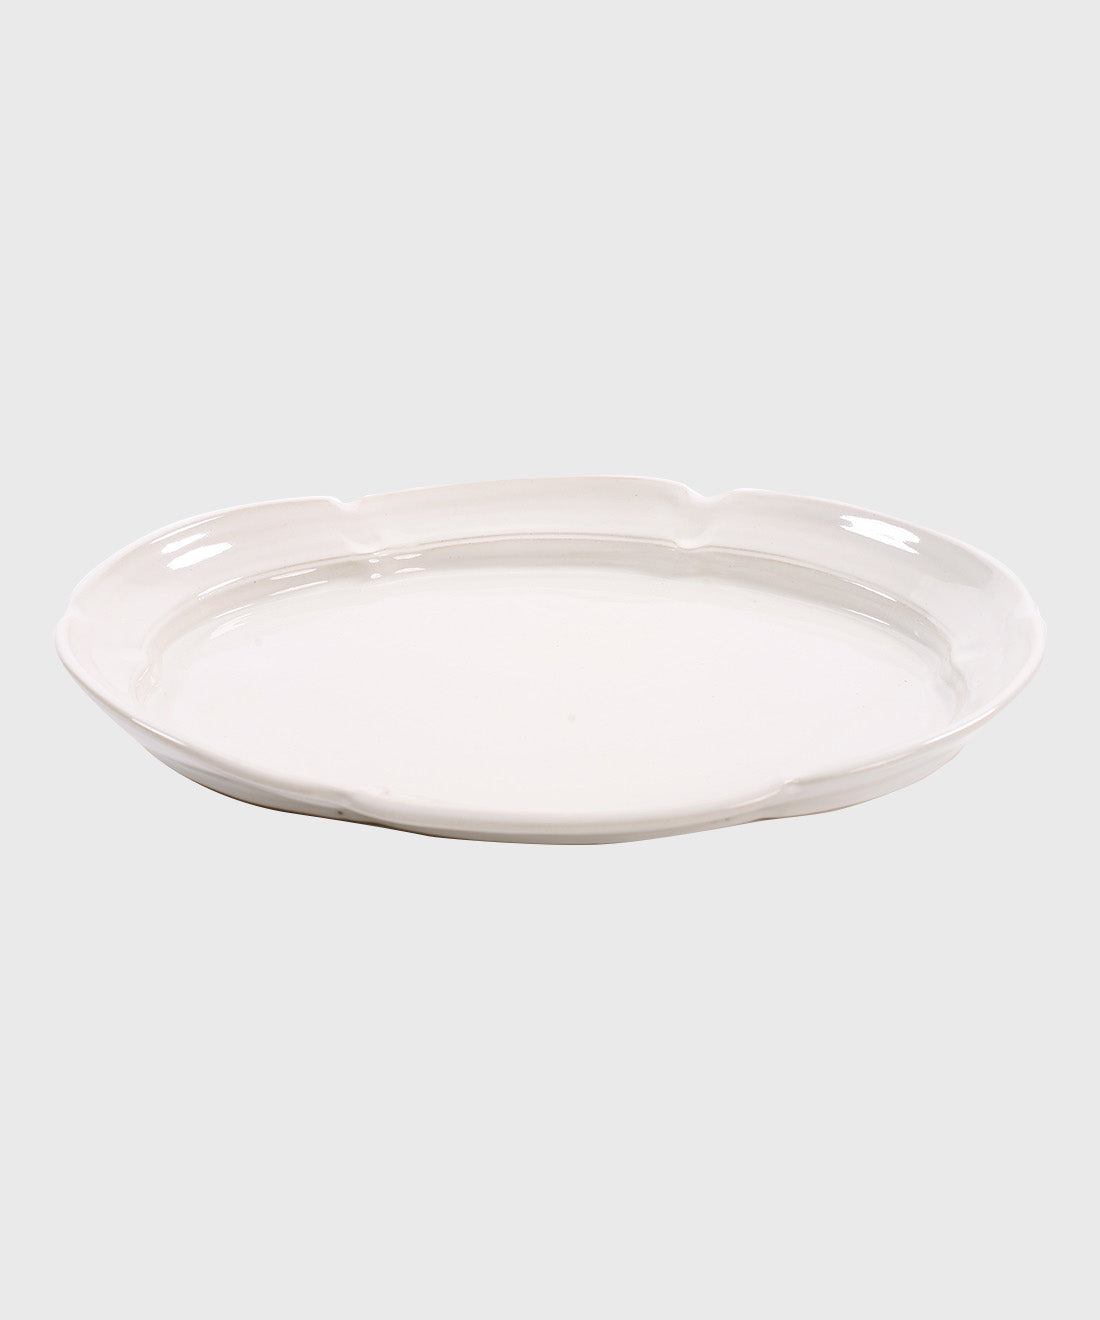 Ceramic Scalloped Platter in White